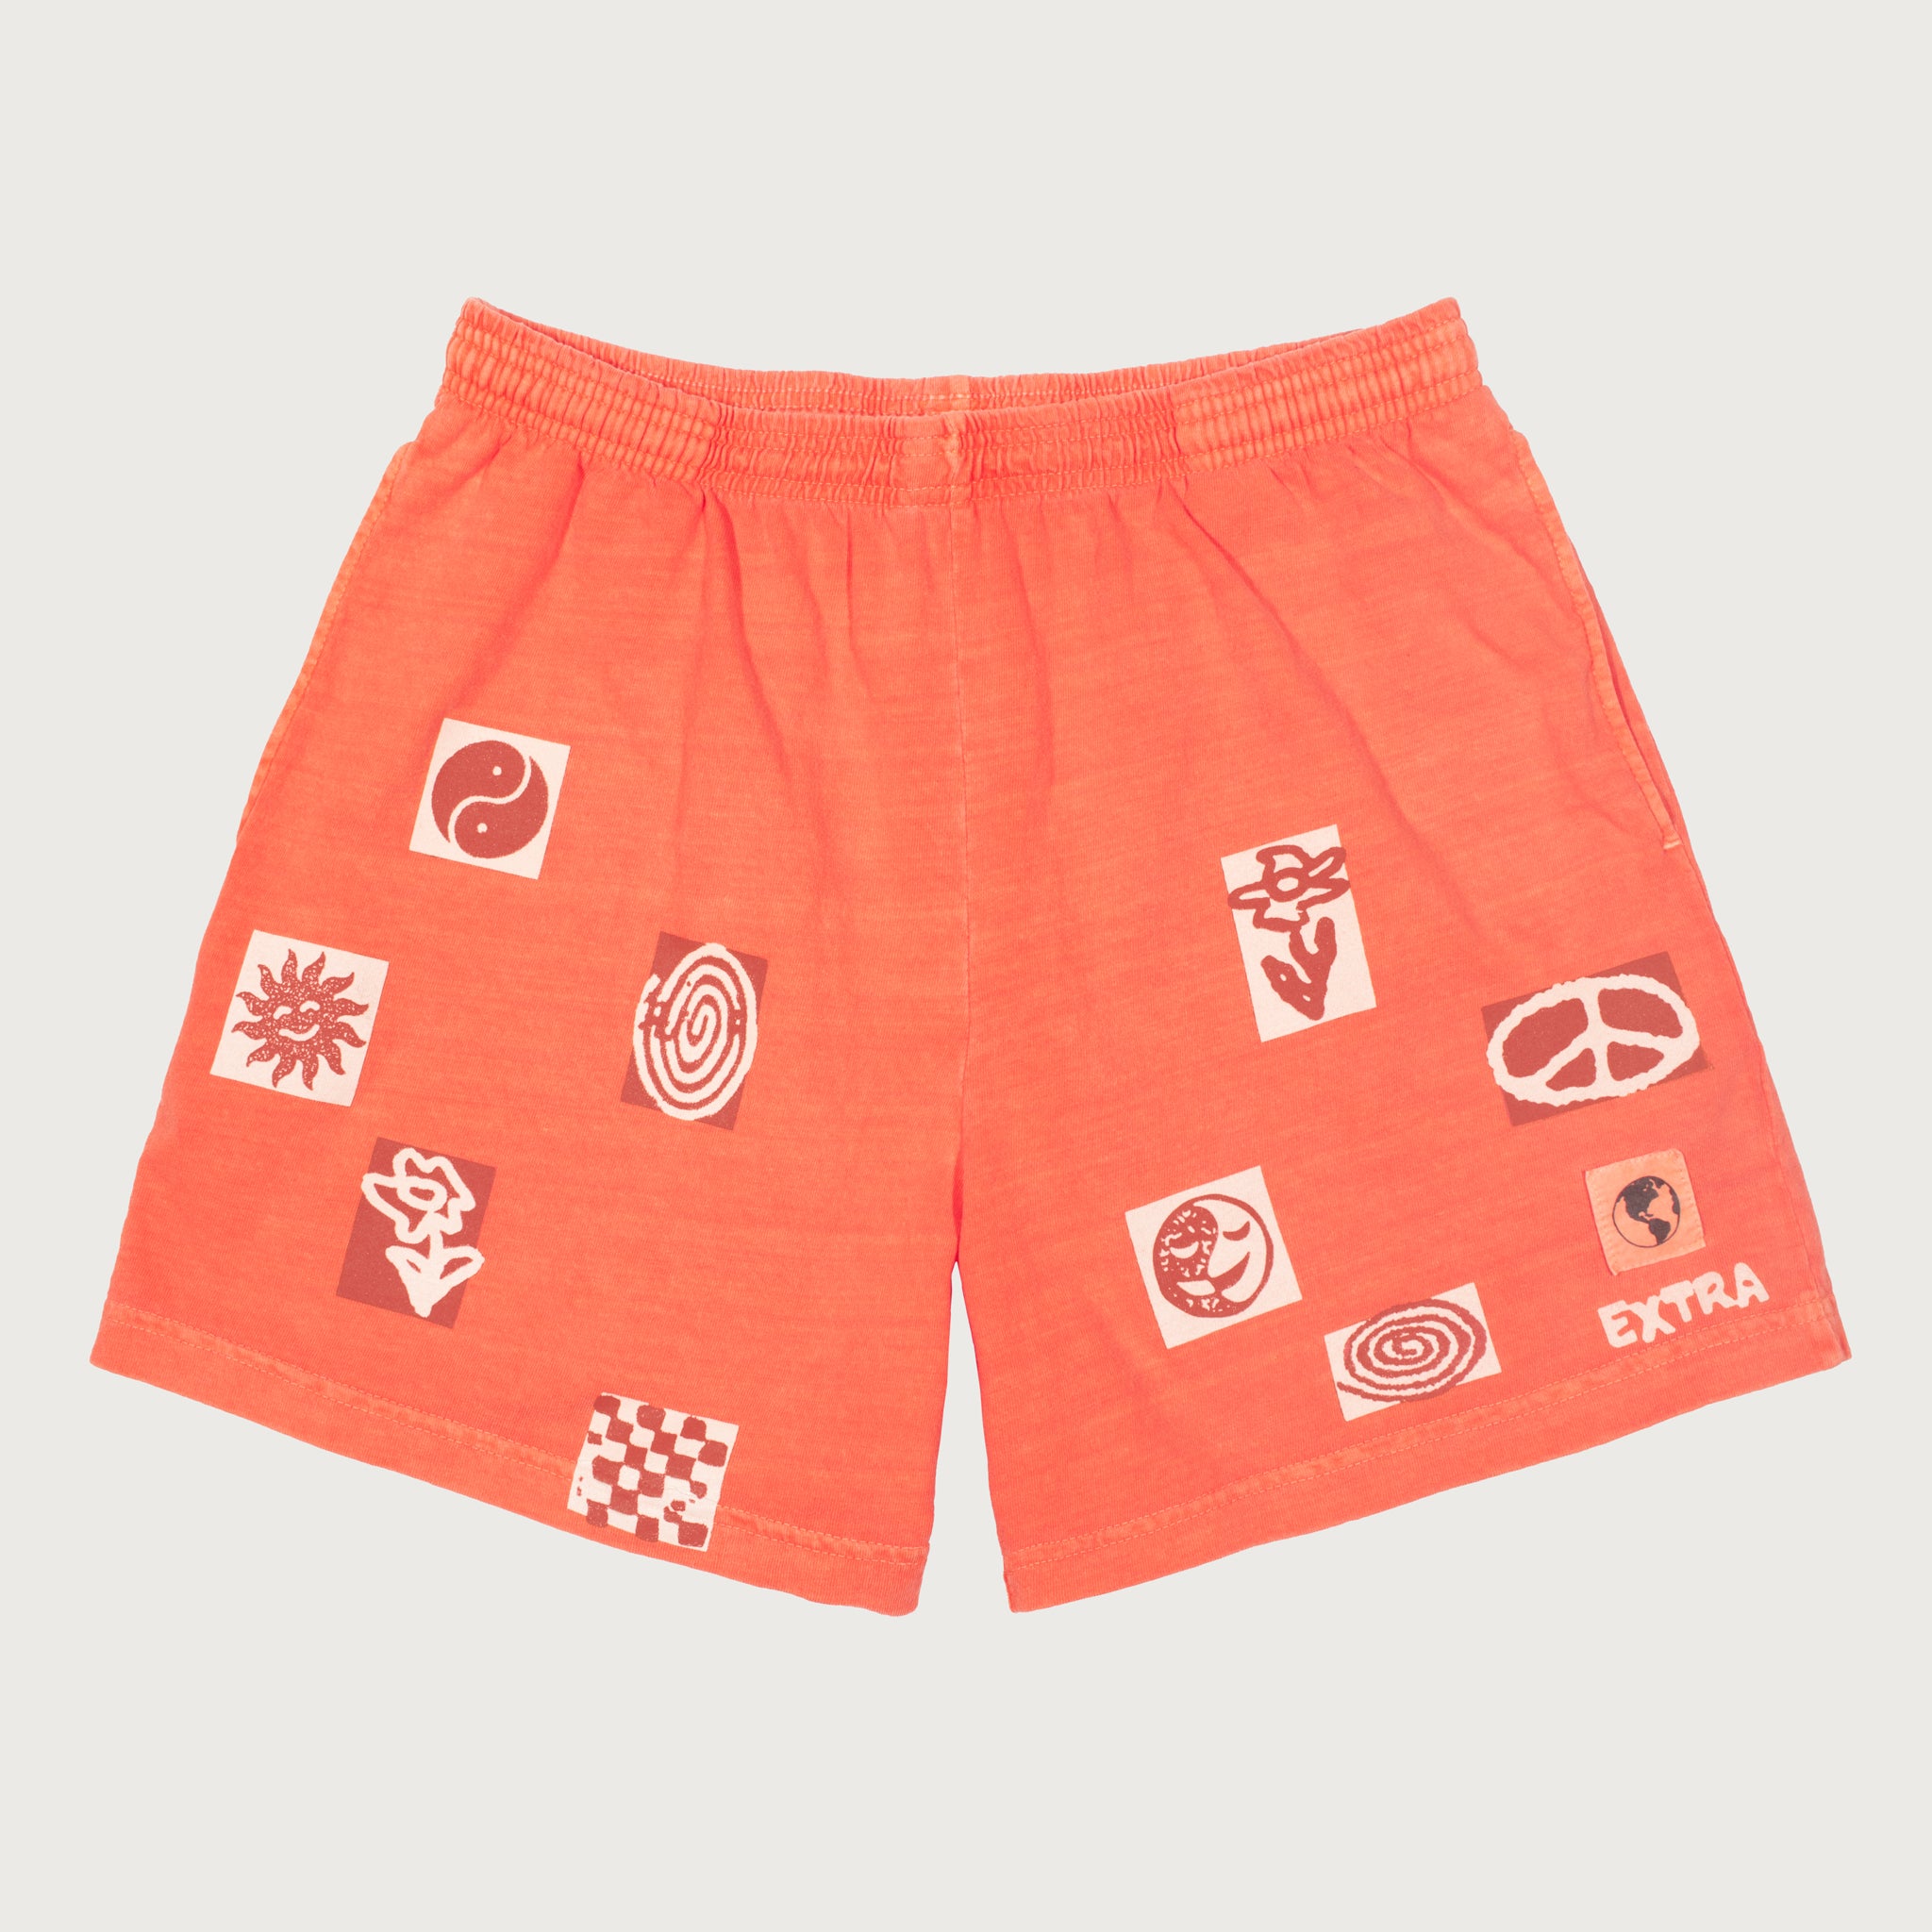 Stamp Shorts - Orange